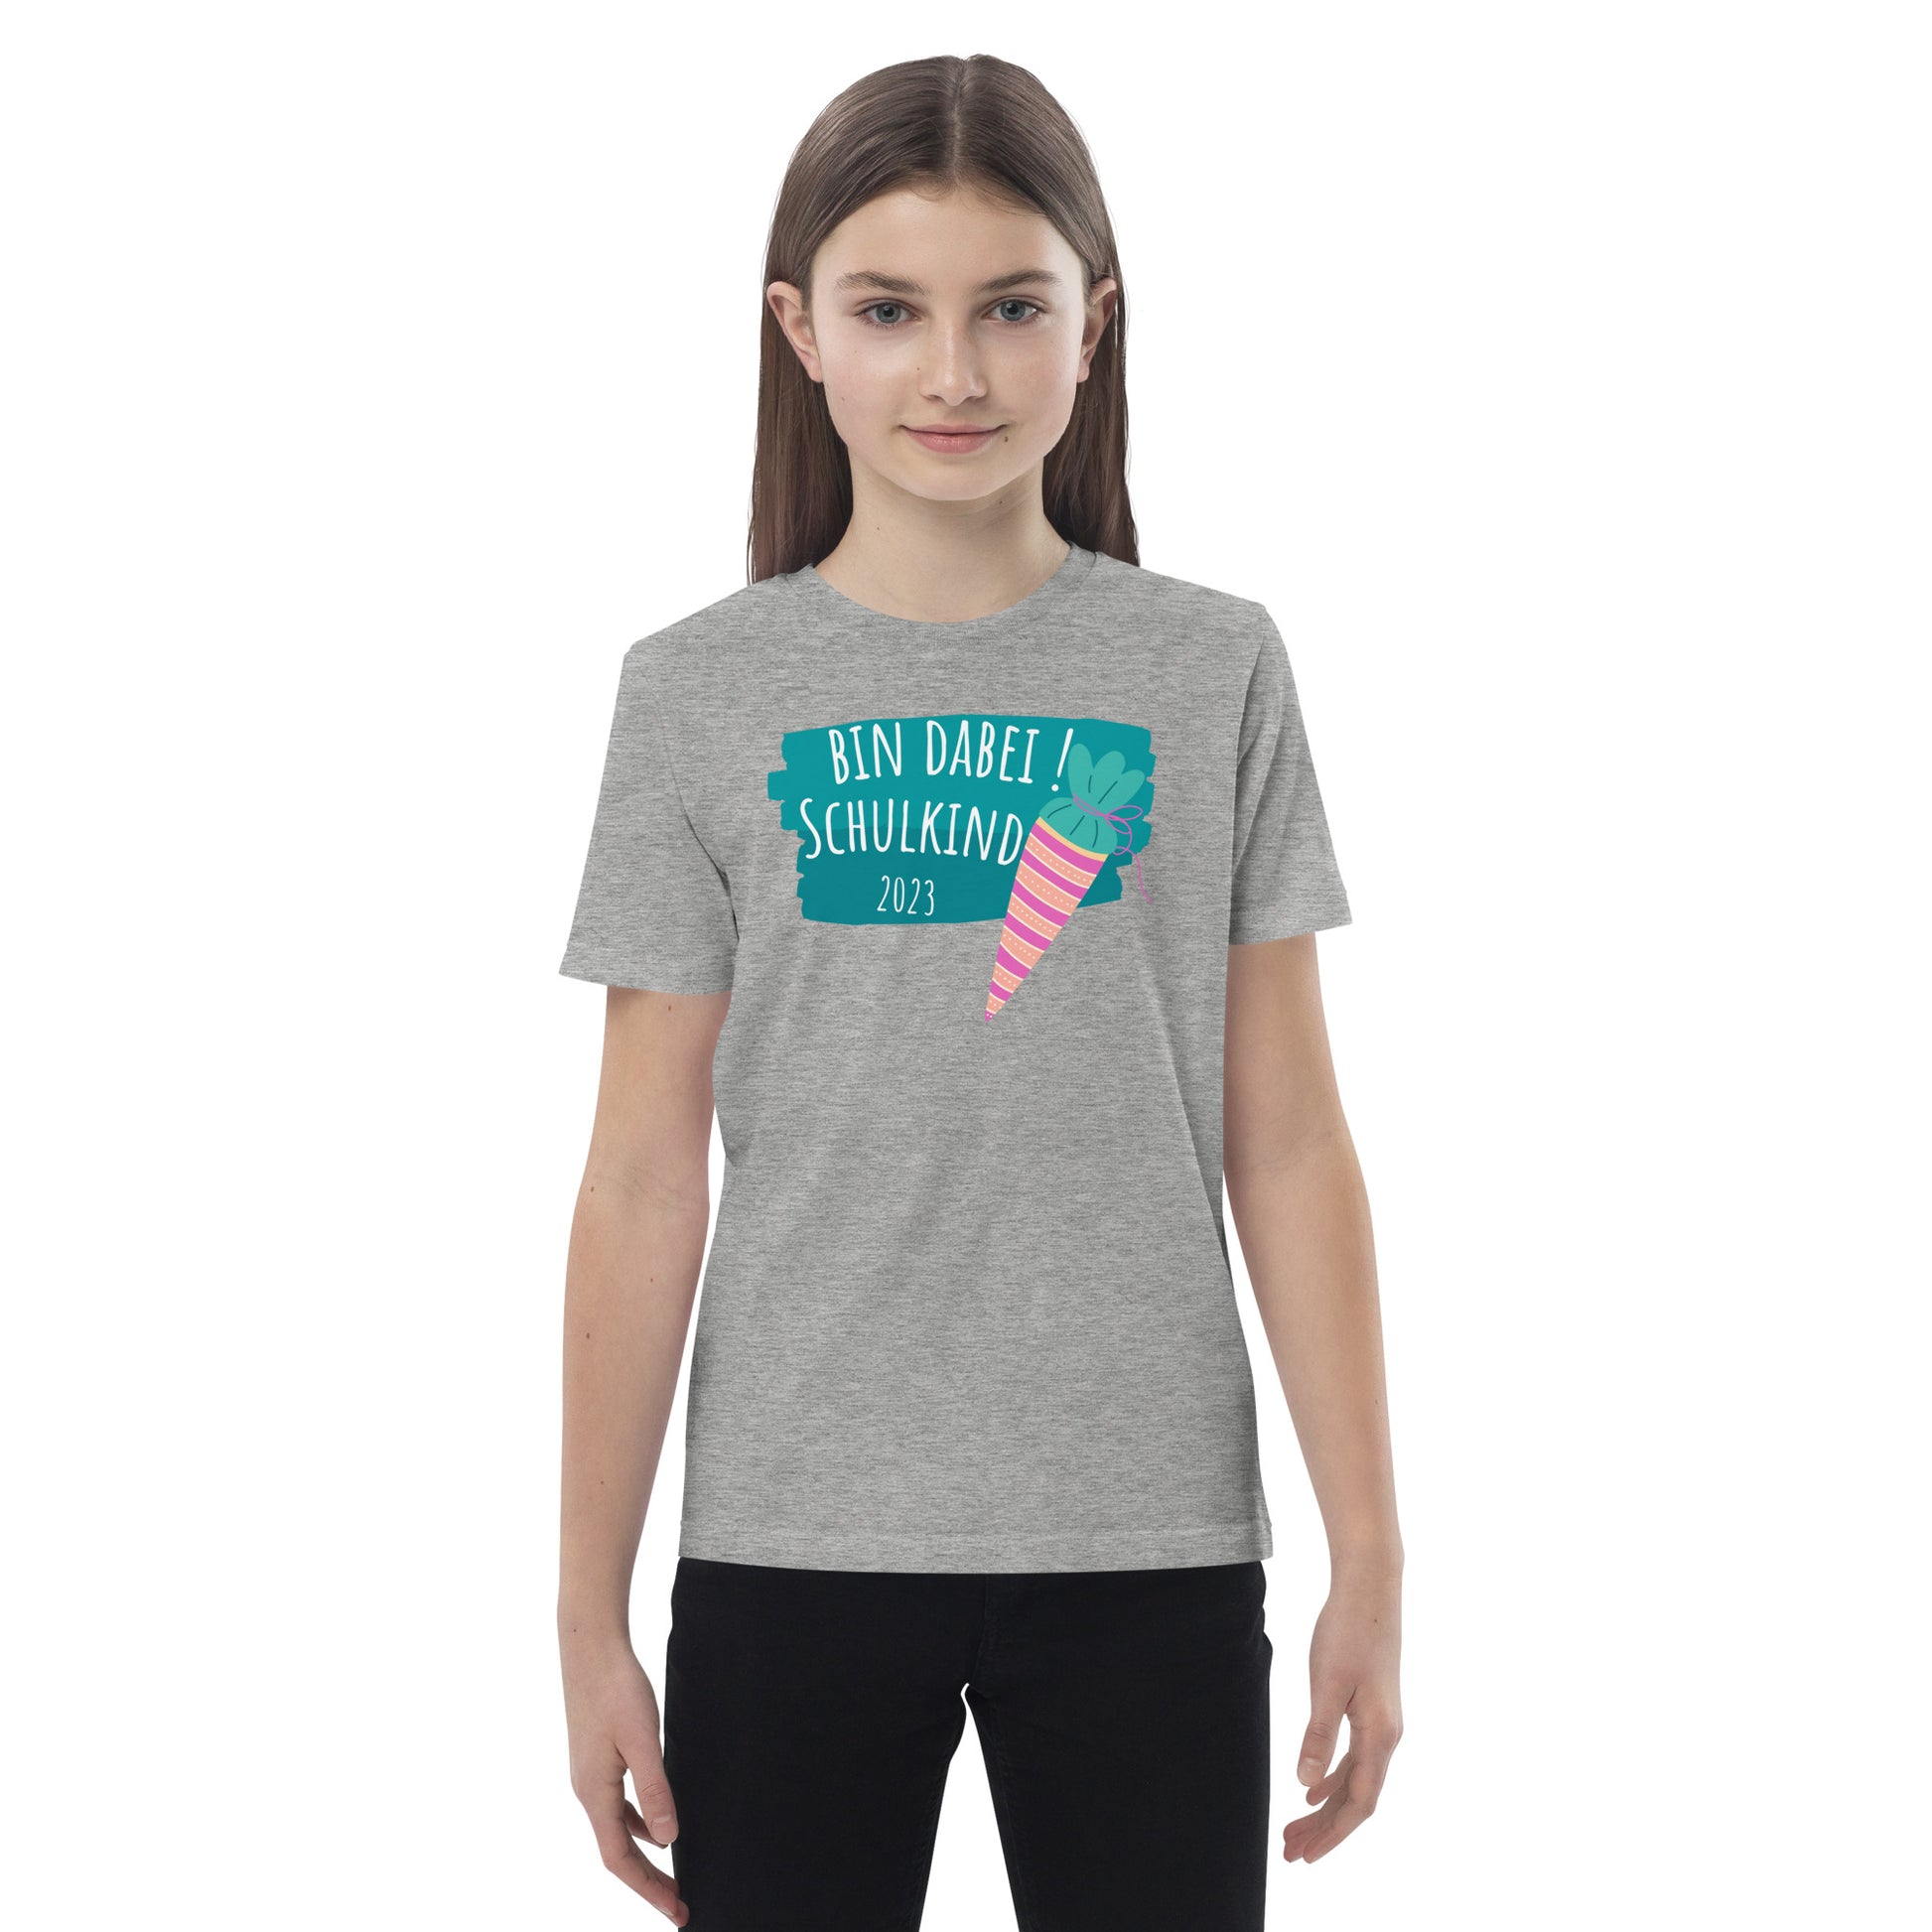 Kinder – Bio-Baumwoll-T-Shirt - nostalgia-privatim-shop 2023 Bin dabei für Schulkind